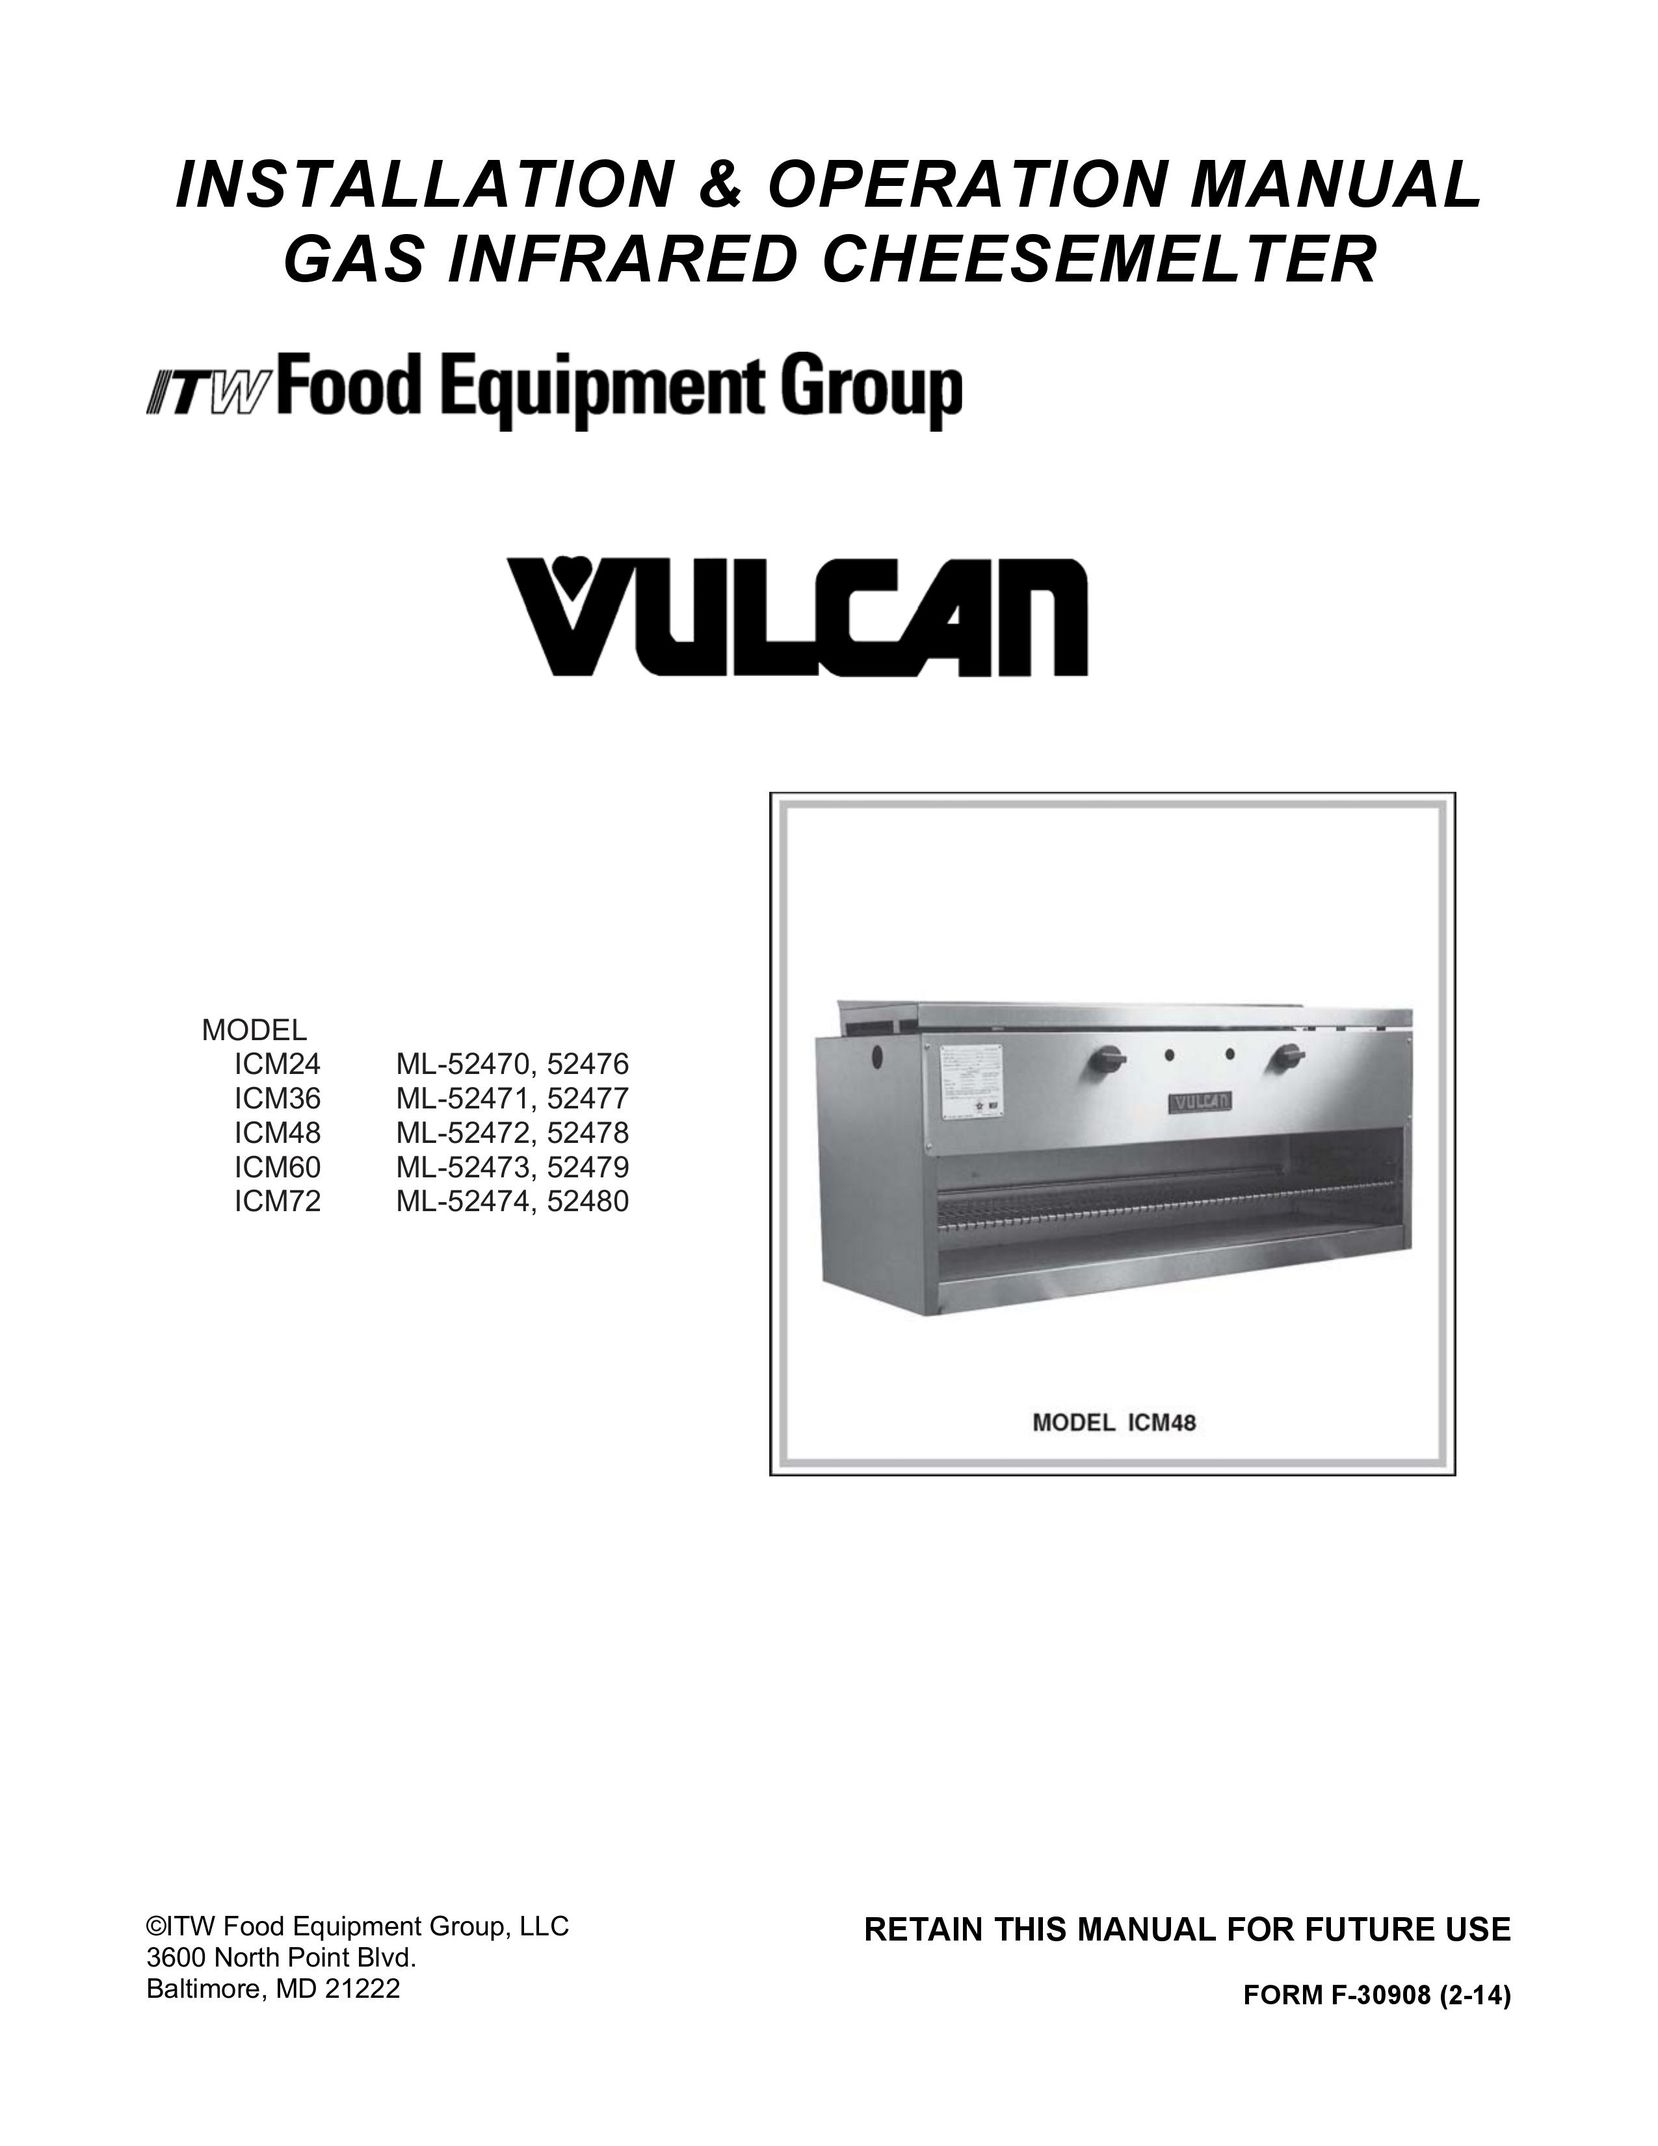 Vulcan-Hart ICM72 ML-52474 Fondue Maker User Manual